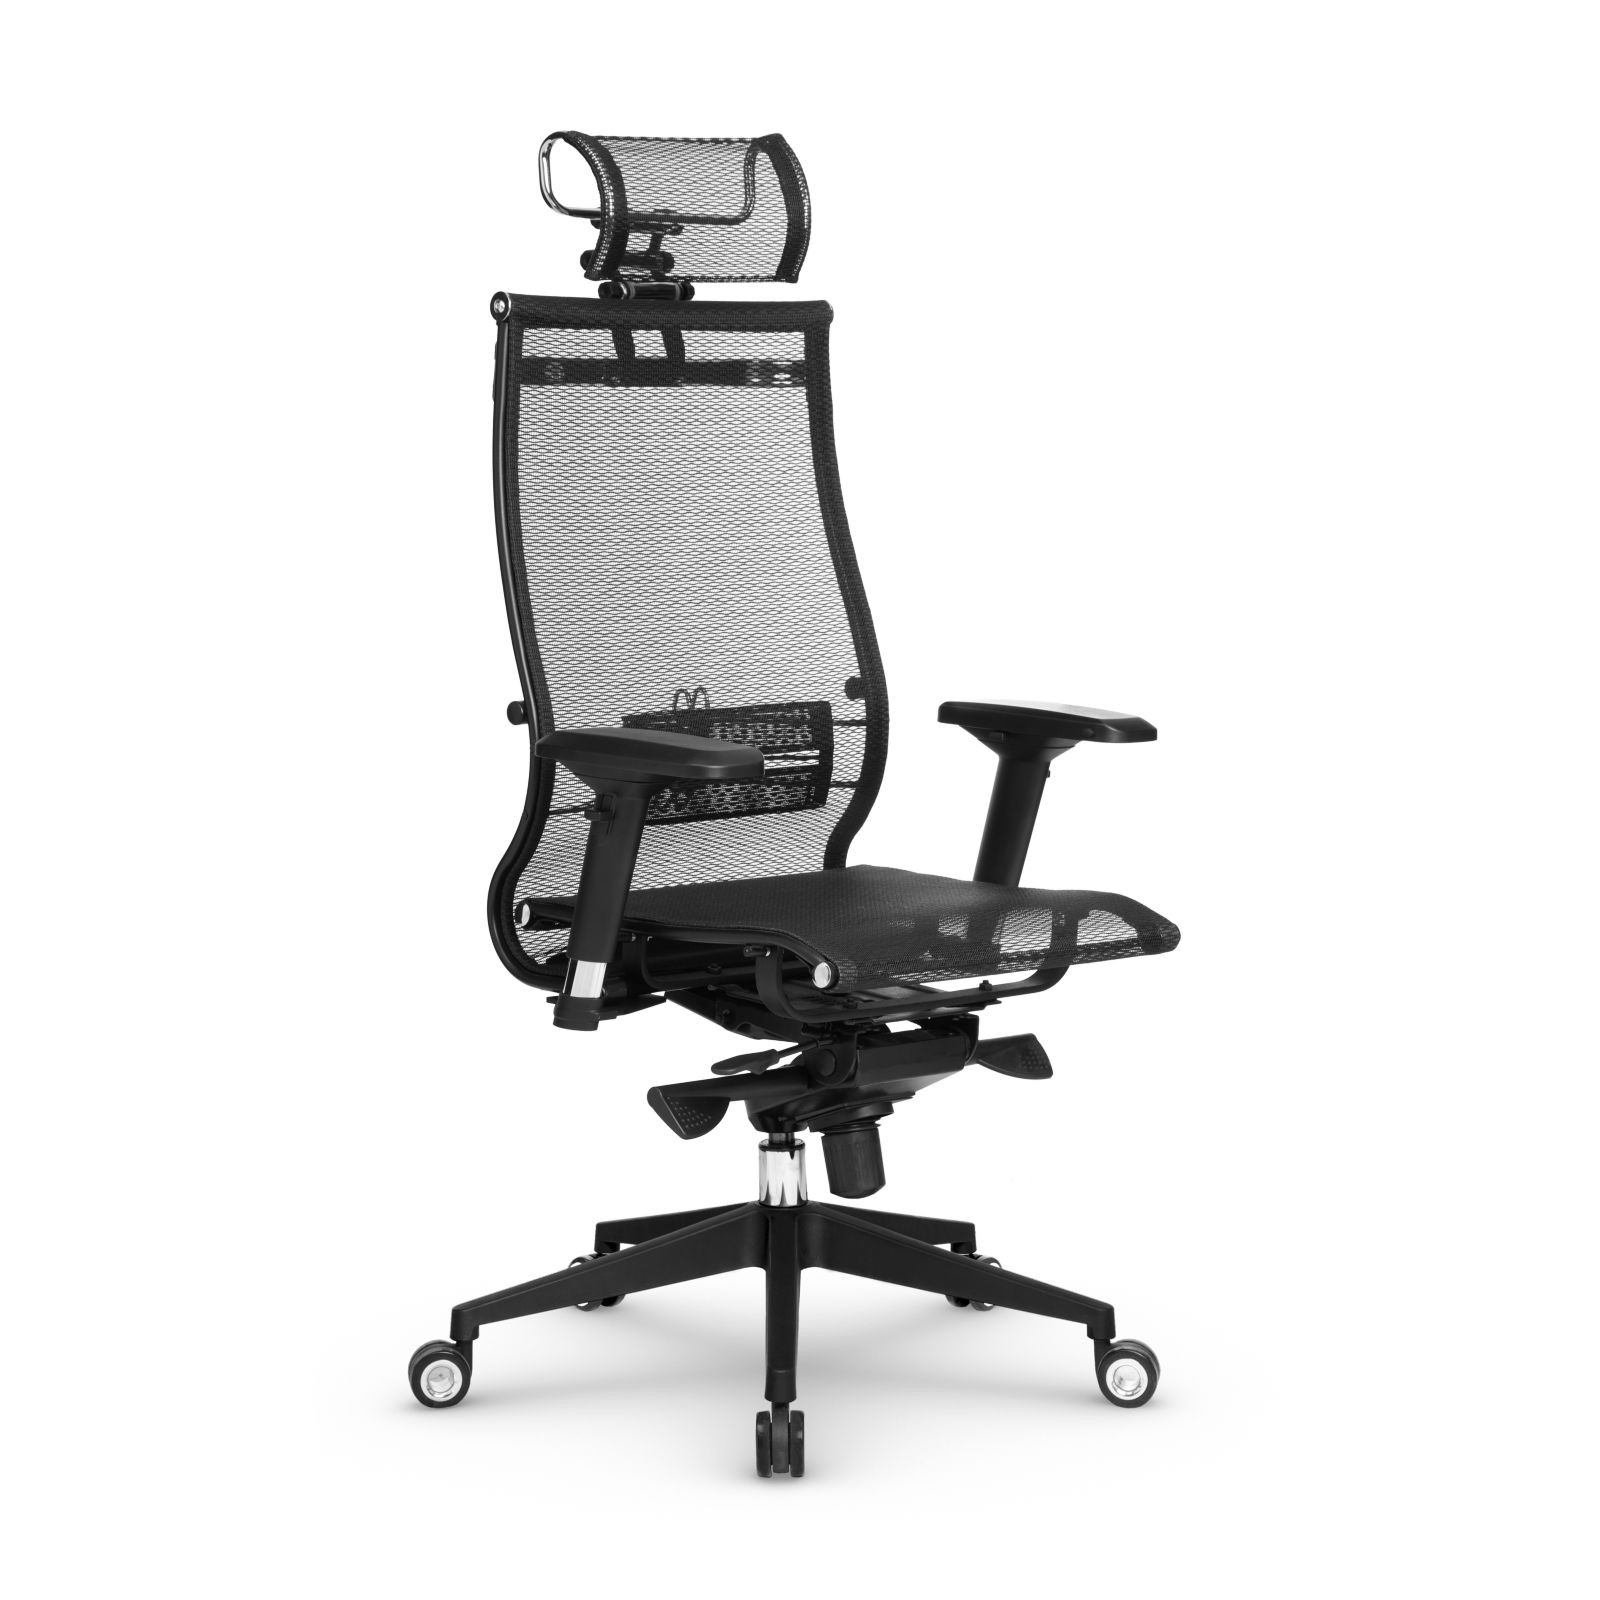 Компьютерное кресло METTA Samurai Black Edition офисное компьютерное обивка: сетка/текстиль(Черный)